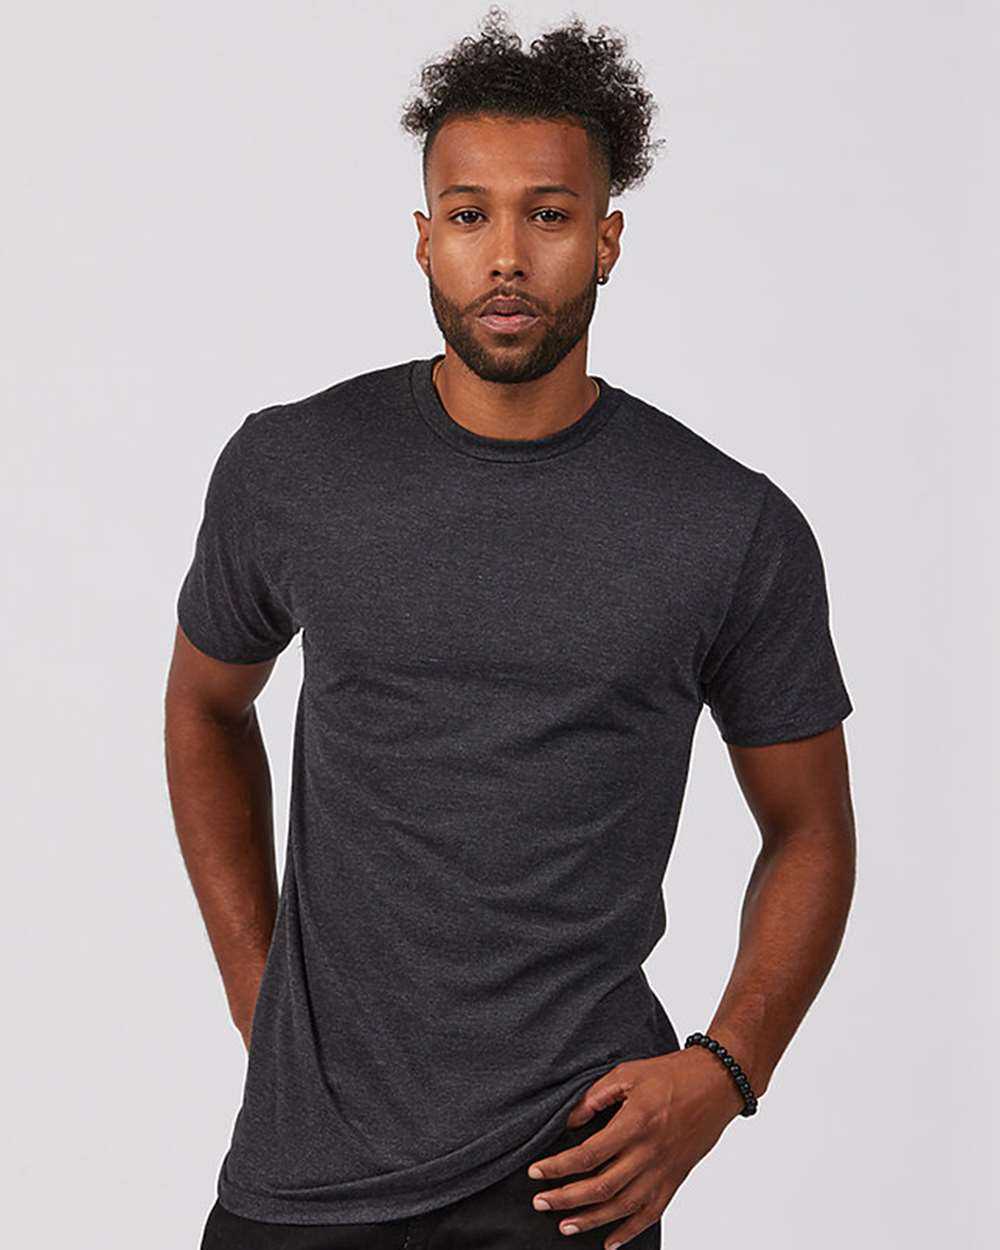 Tultex 541 Unisex Premium Cotton Blend T-Shirt - Black Heather - HIT a Double